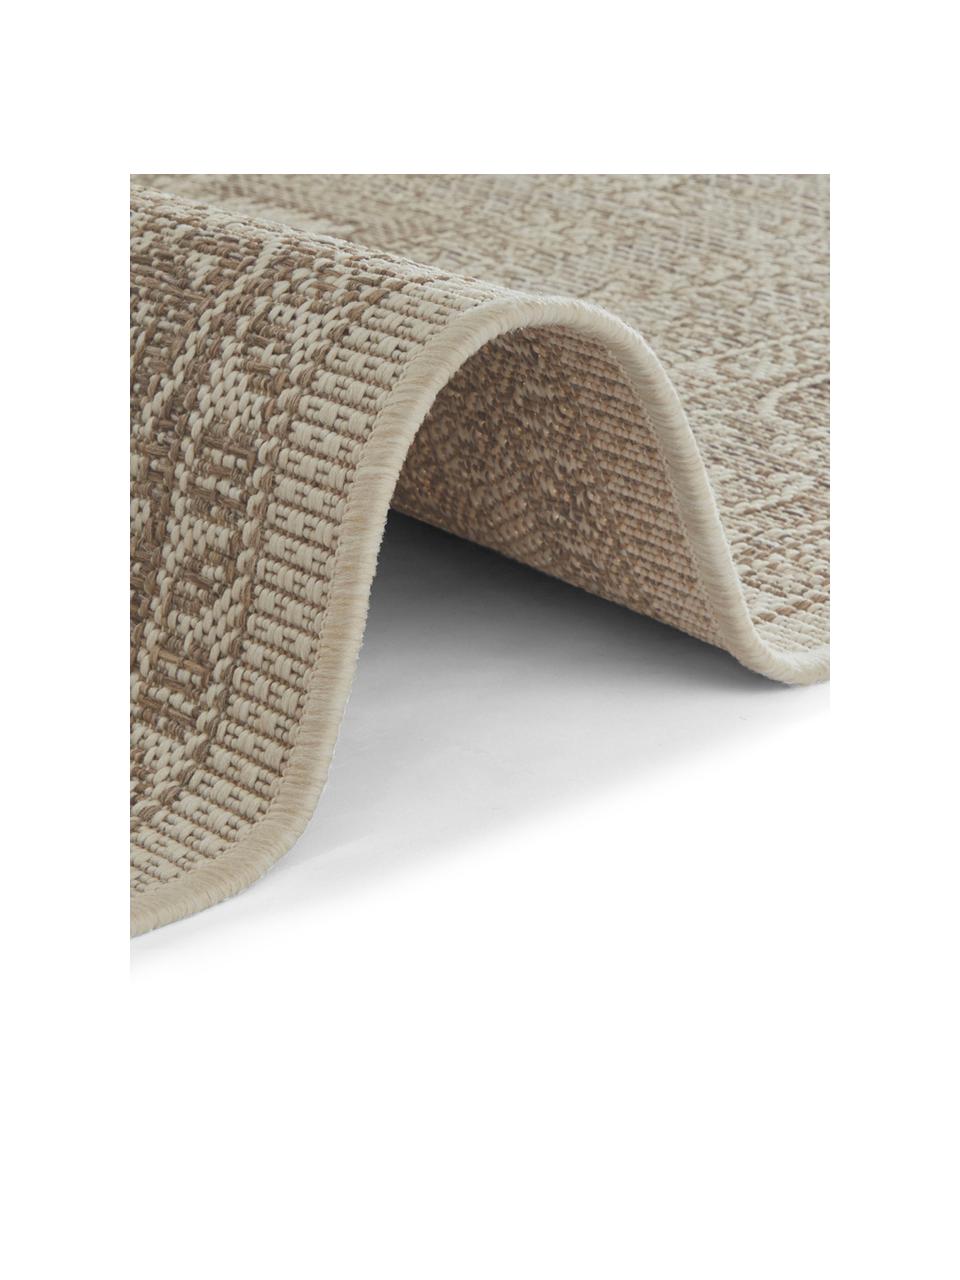 In- & Outdoor-Teppich Anjara im Vintage Style, 100% Polypropylen, Taupe, Beige, B 200 x L 290 cm (Größe L)